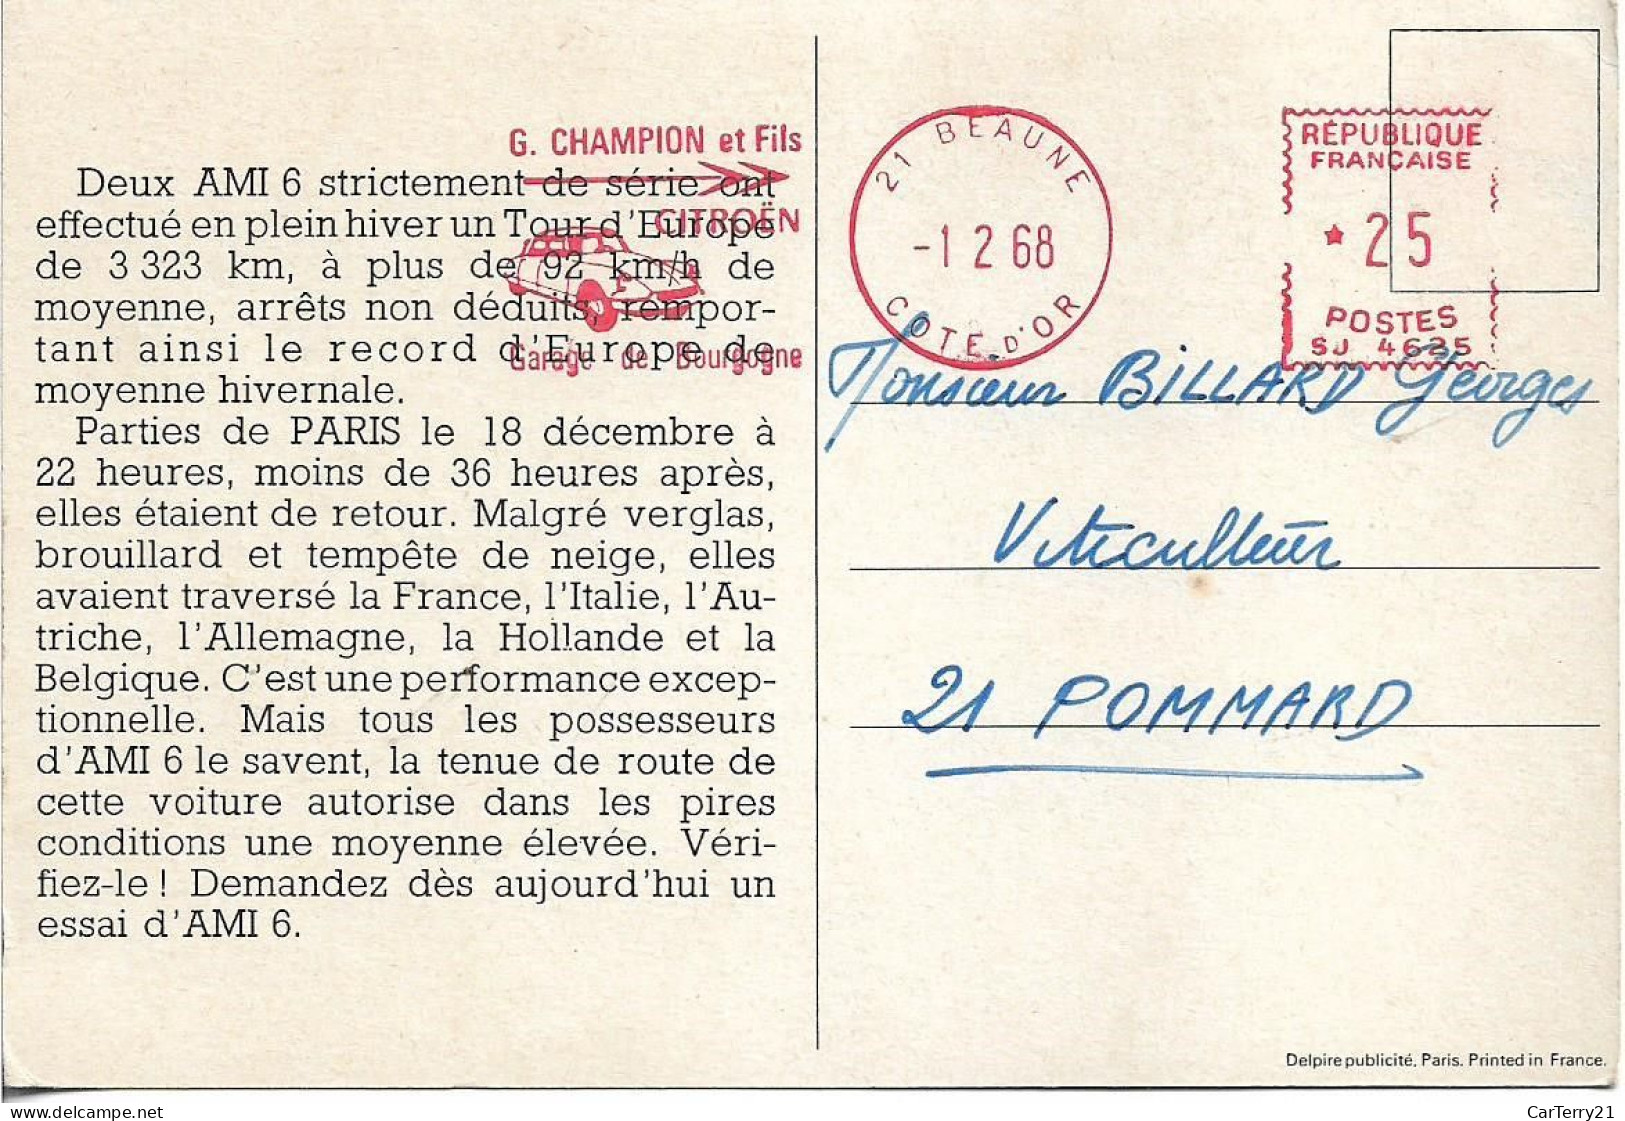 CARTE PUBLICITAIRE. TOUR D'EUROPE DE 2 AMI 6. 1968. - Toerisme